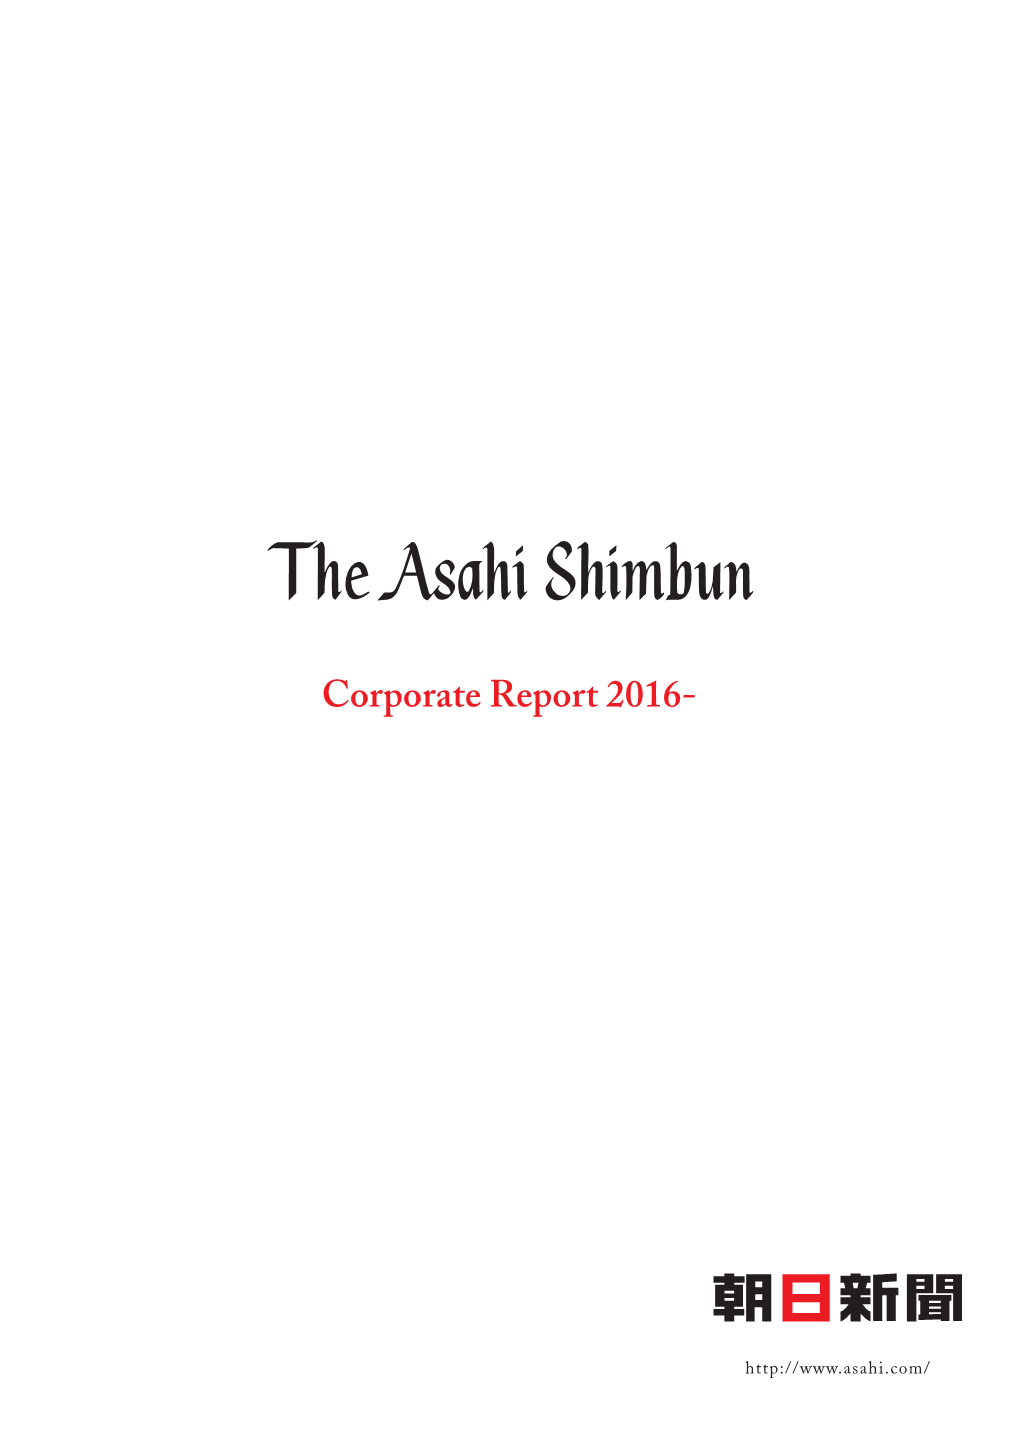 The Asahi Shimbun Corporate Report 2016